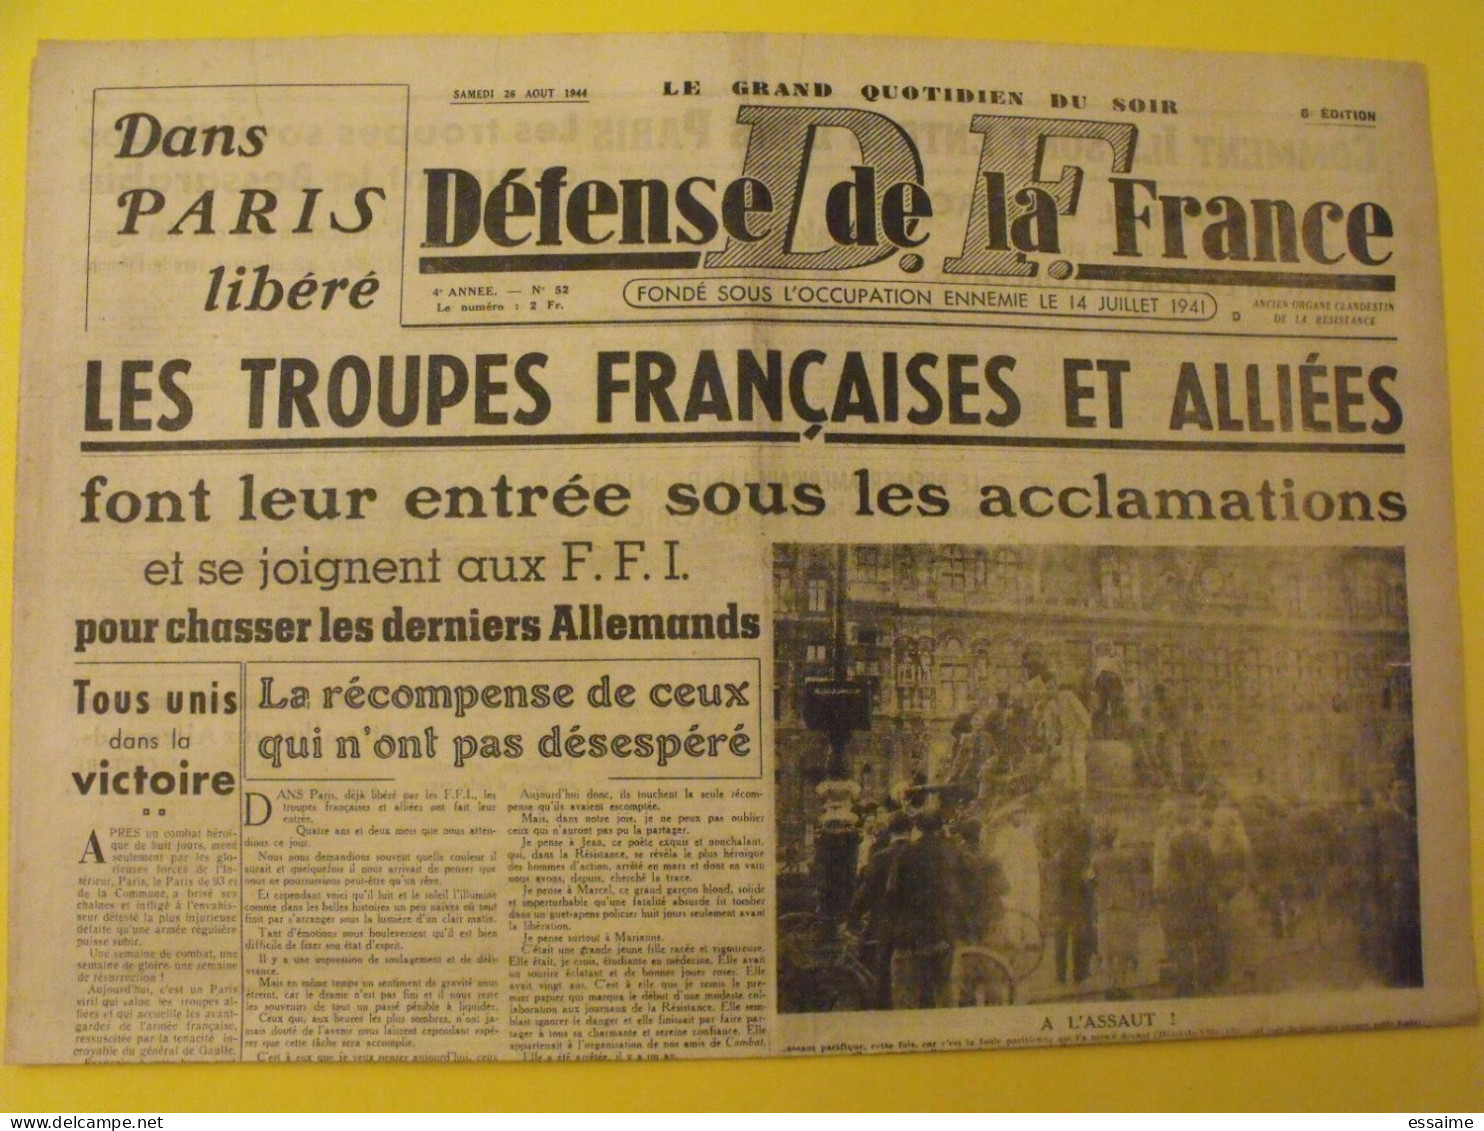 Défense De La France N° 52 Du 26 Août 1944. Paris Libéré FFI Leclerc De Gaulle George VI Bordeaux Lyon Saint-Etienne - War 1939-45